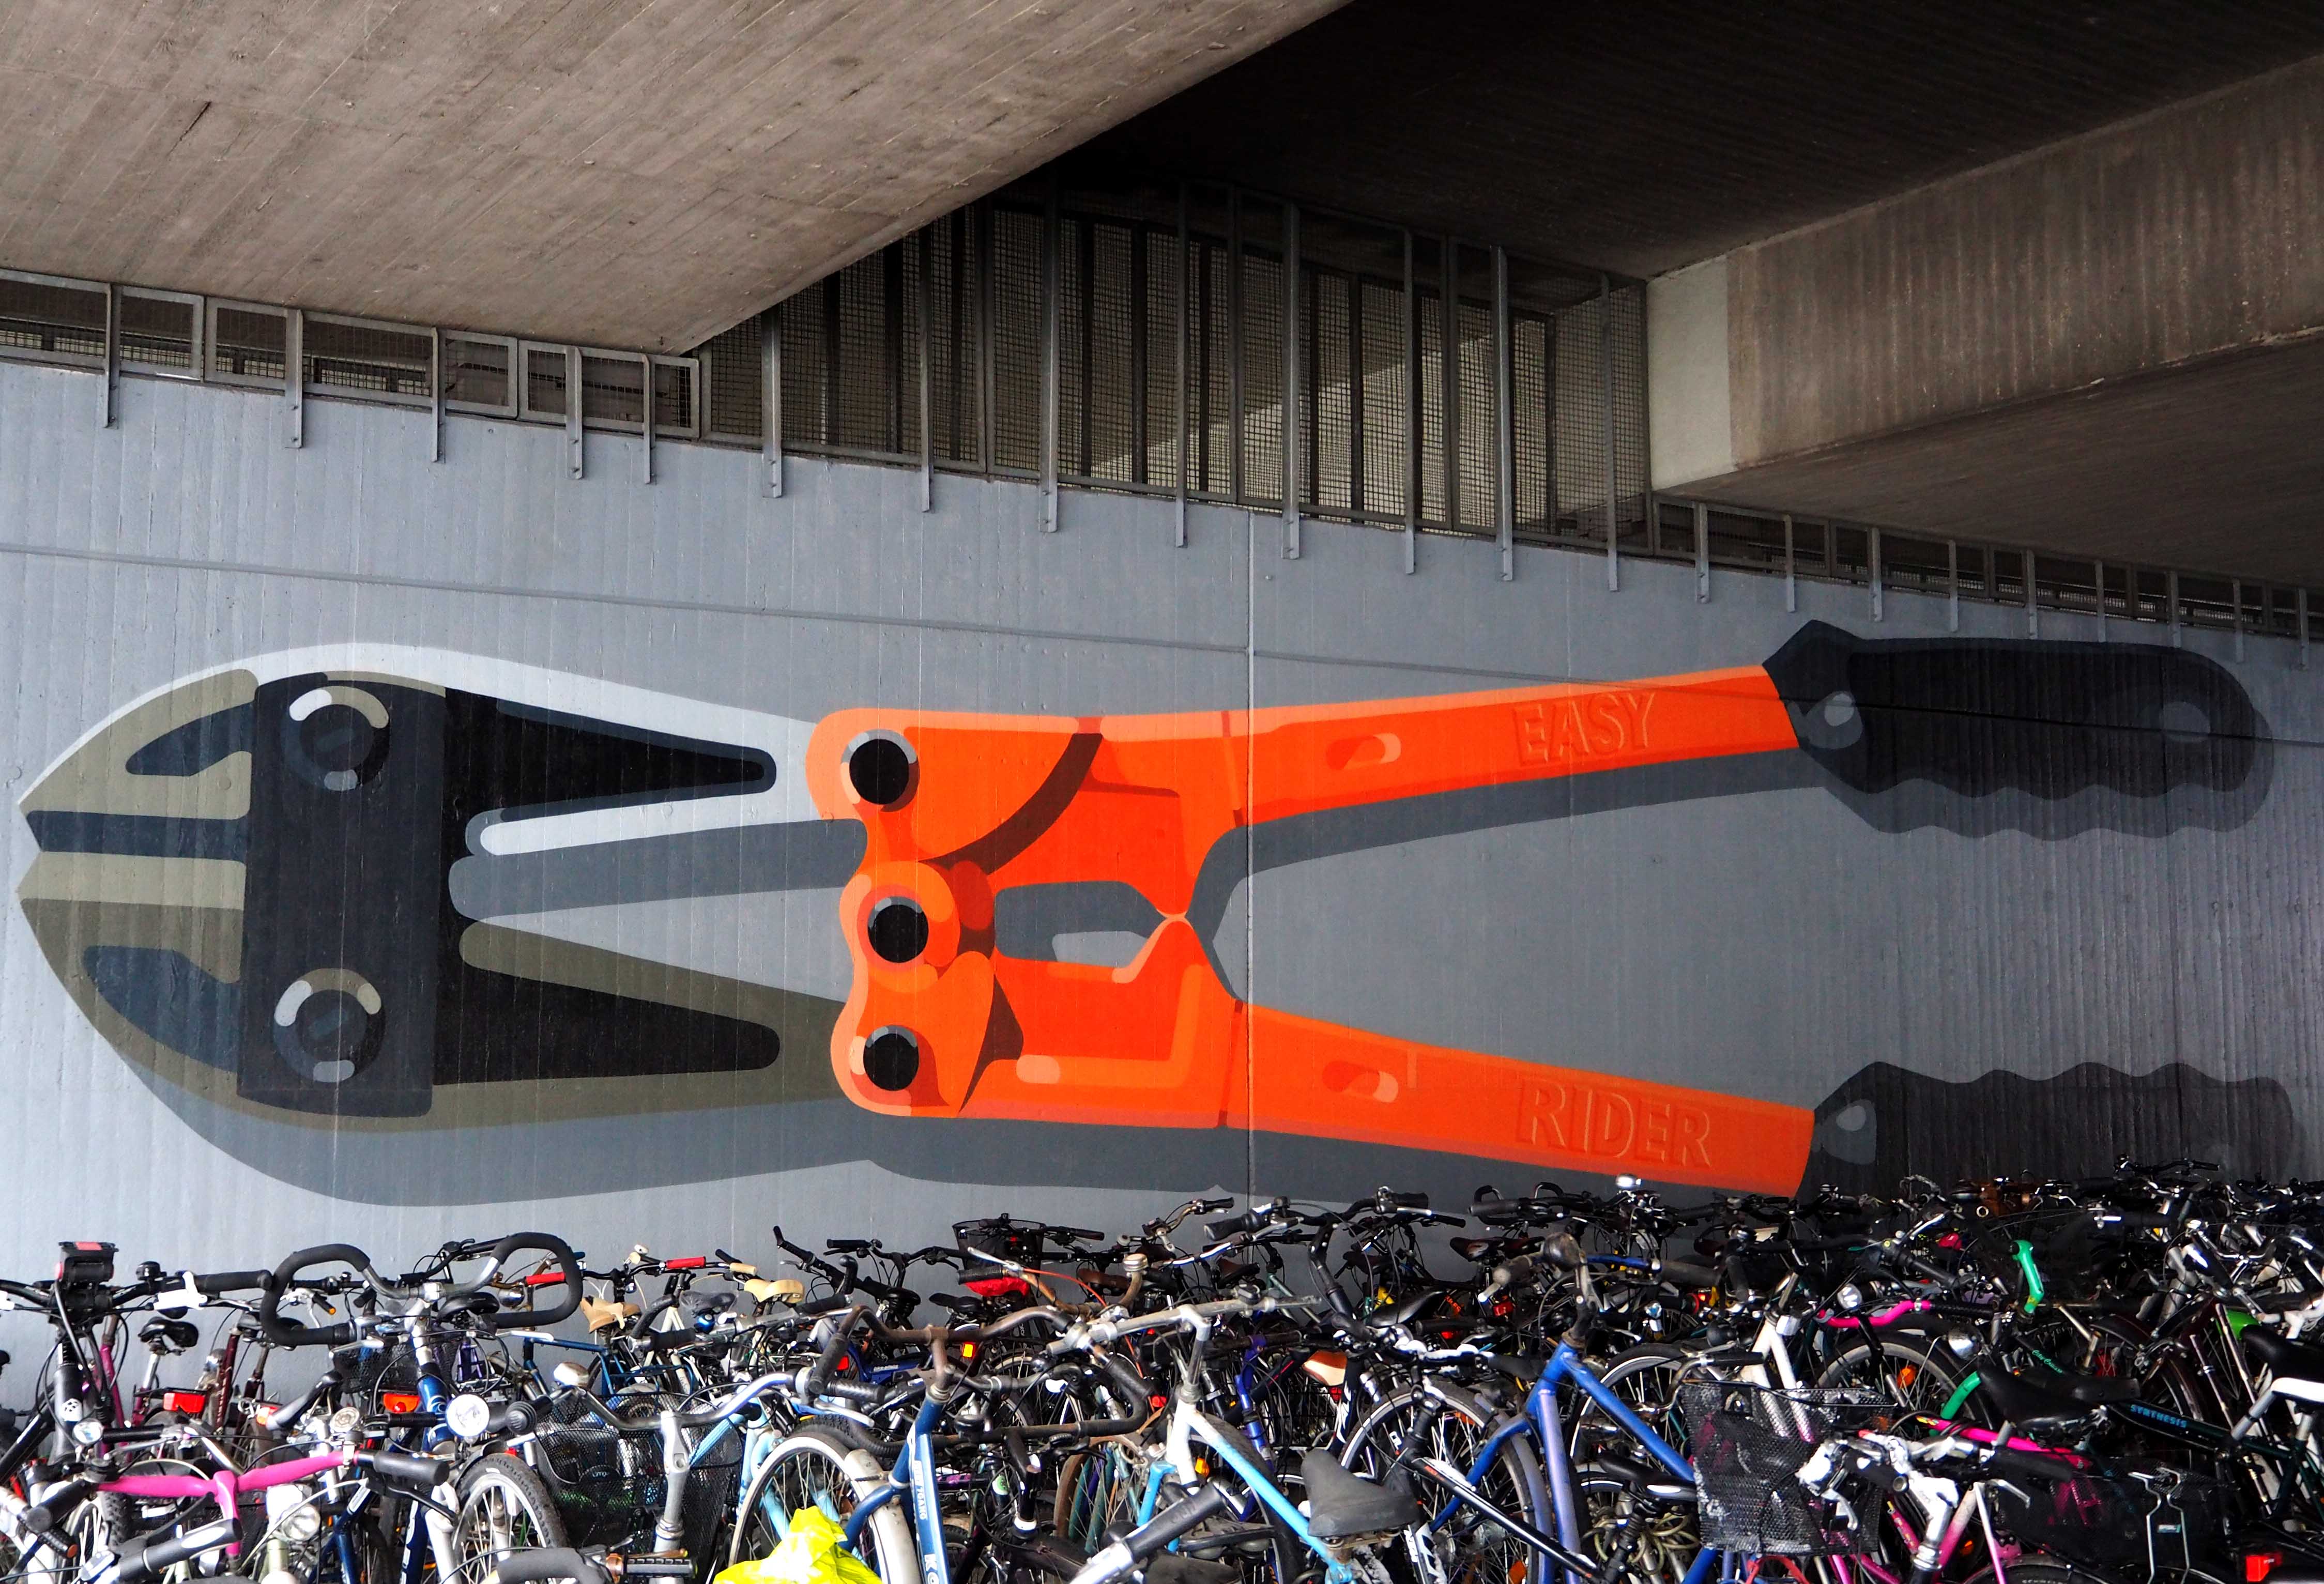 unter einer Brücke, ein Mural dass vor sehr vielen Fahrrädern einen Bolzenschneider zeigt